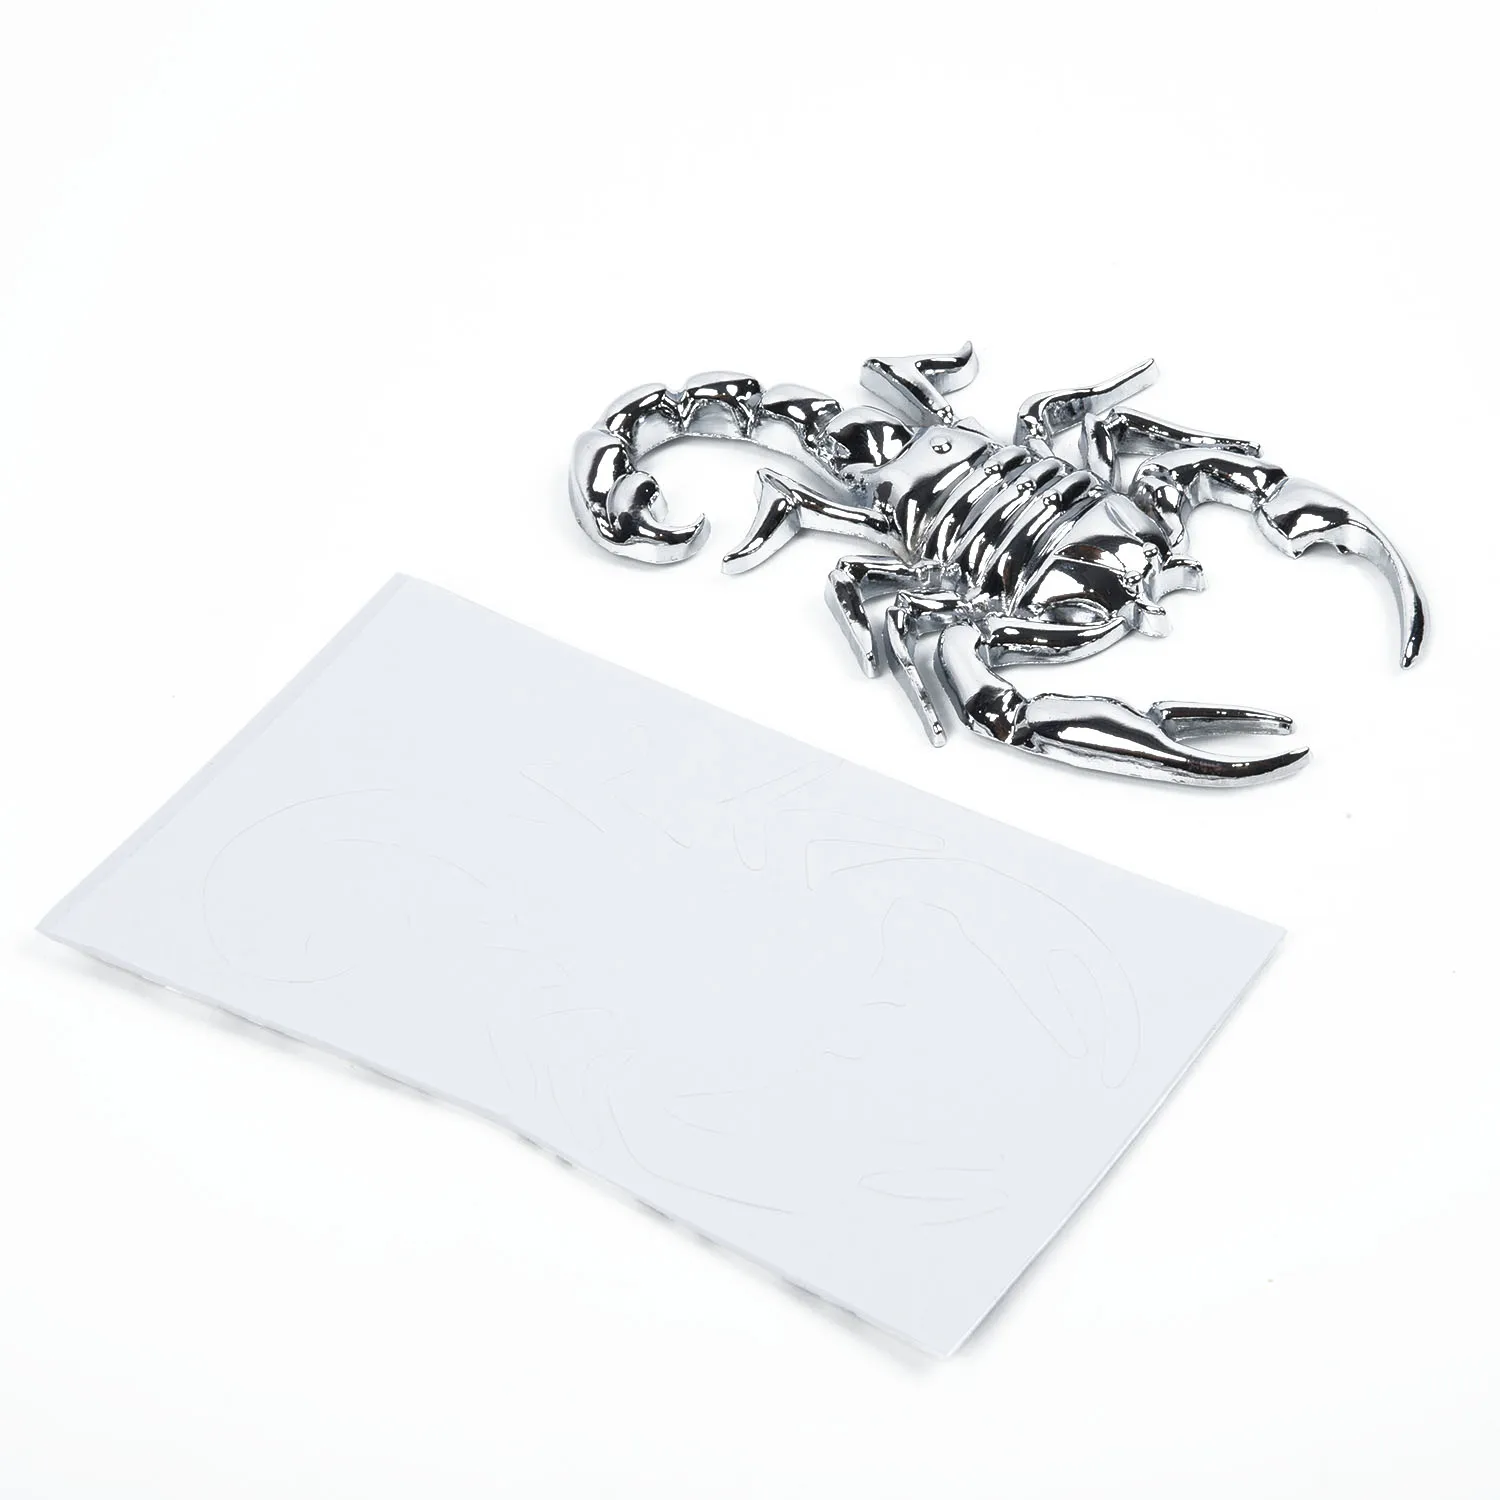 Набор сменных наклеек с эмблемой, Металлический клейкий дизайн 9,5x5,5 см, Аксессуары, детали, Клейкая наклейка, значок Scorpion King